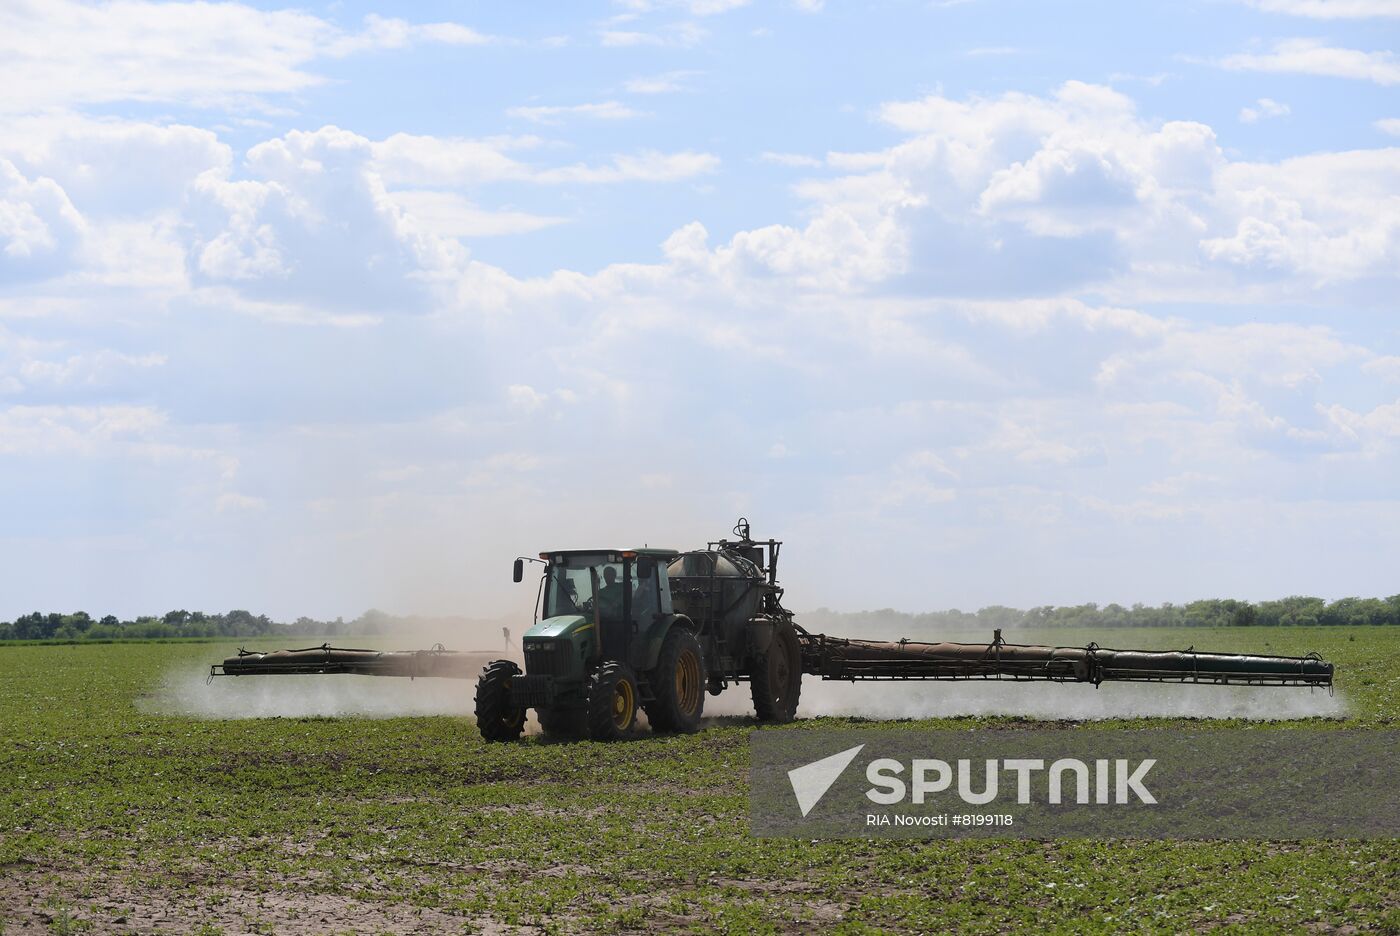 Ukraine Agriculture